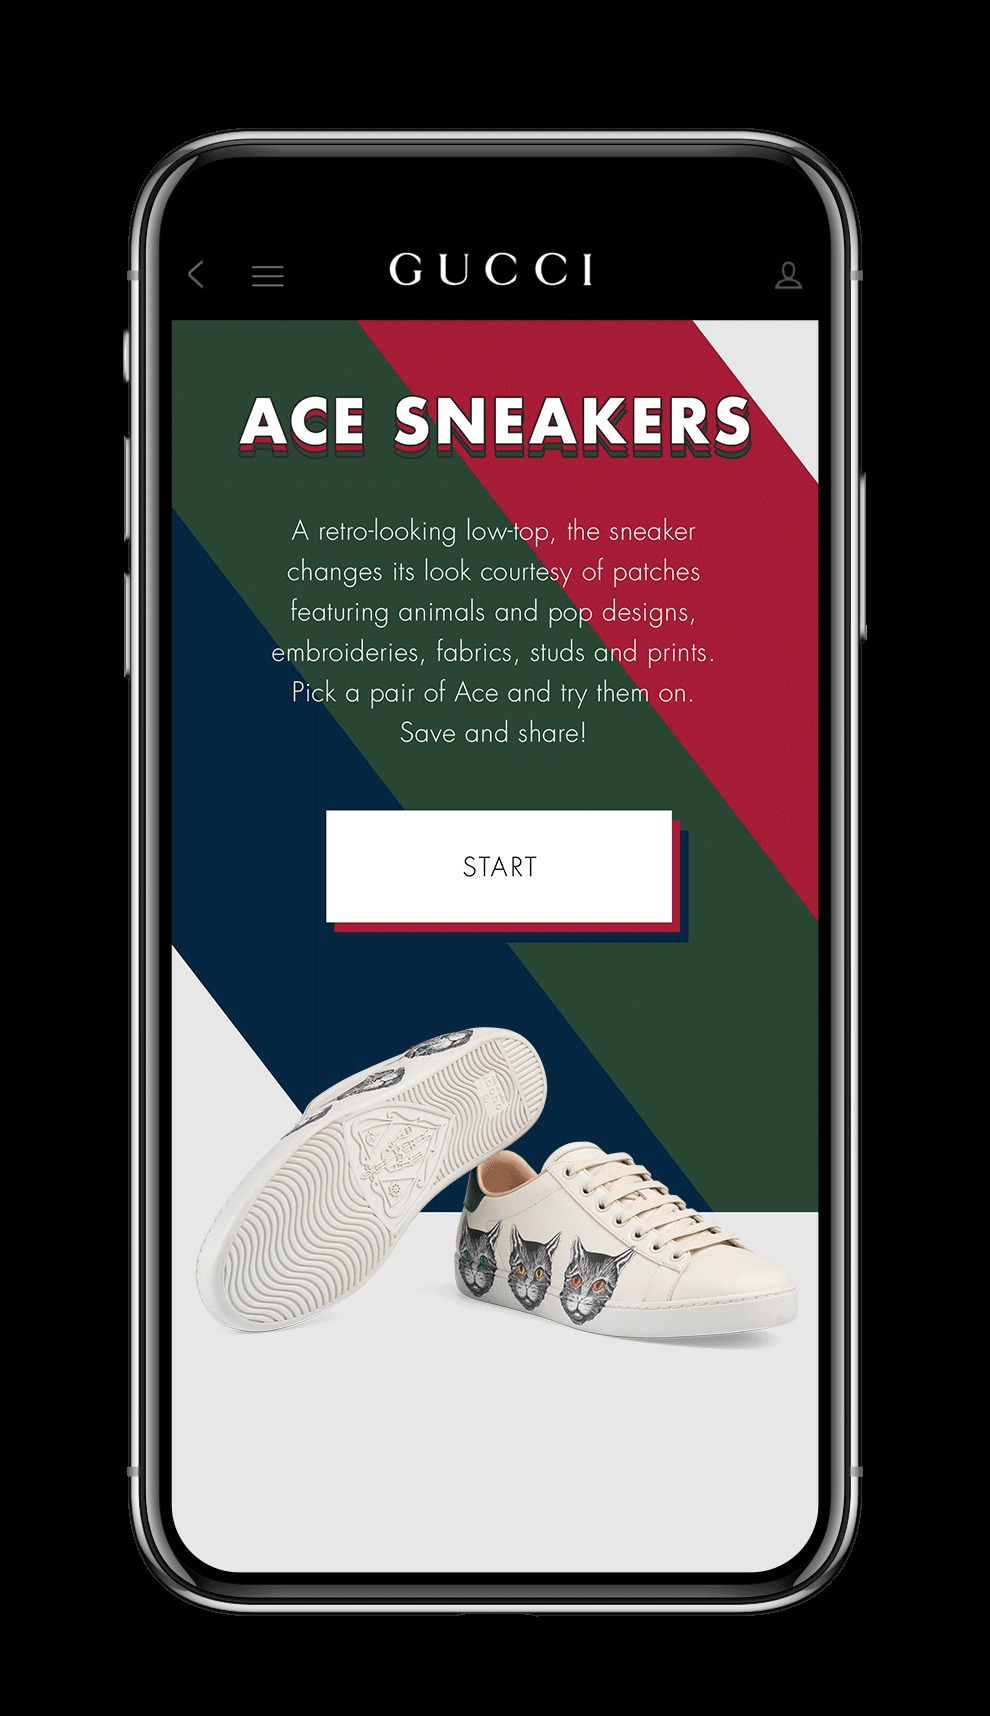 網購族不用出門也能試穿新鞋　國際名牌推「虛擬試穿APP」功能強大